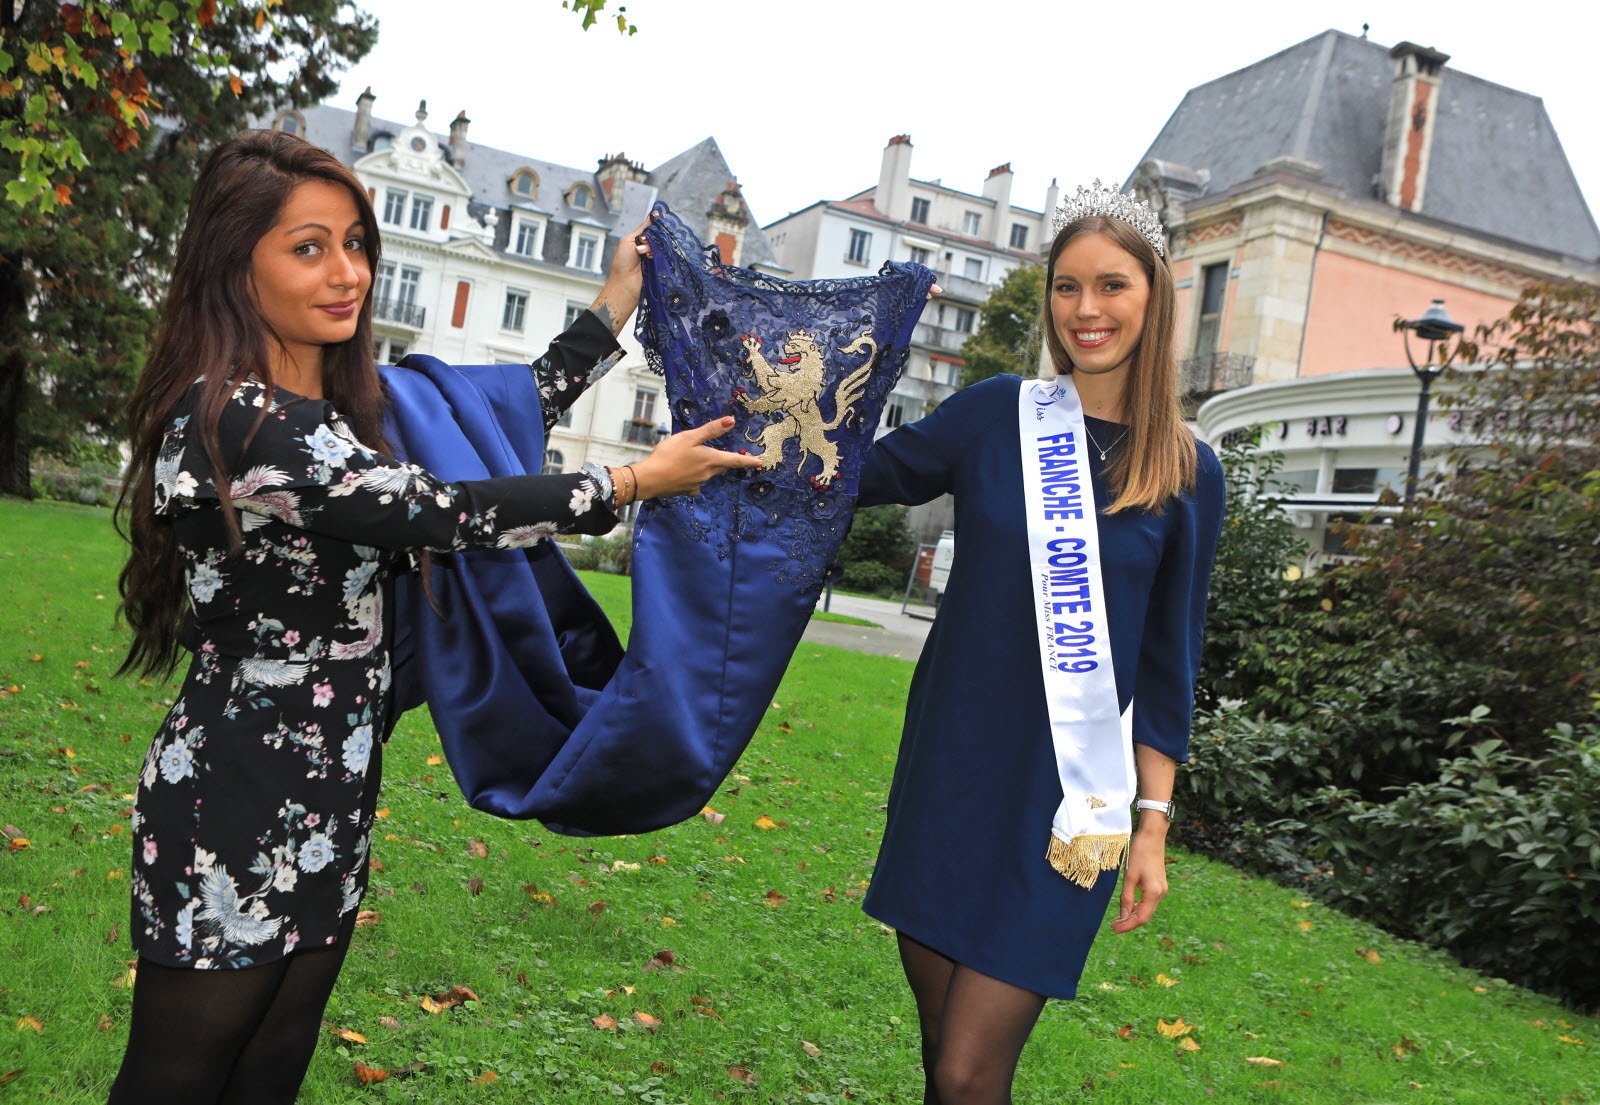 Miss Franche-Comté 2019